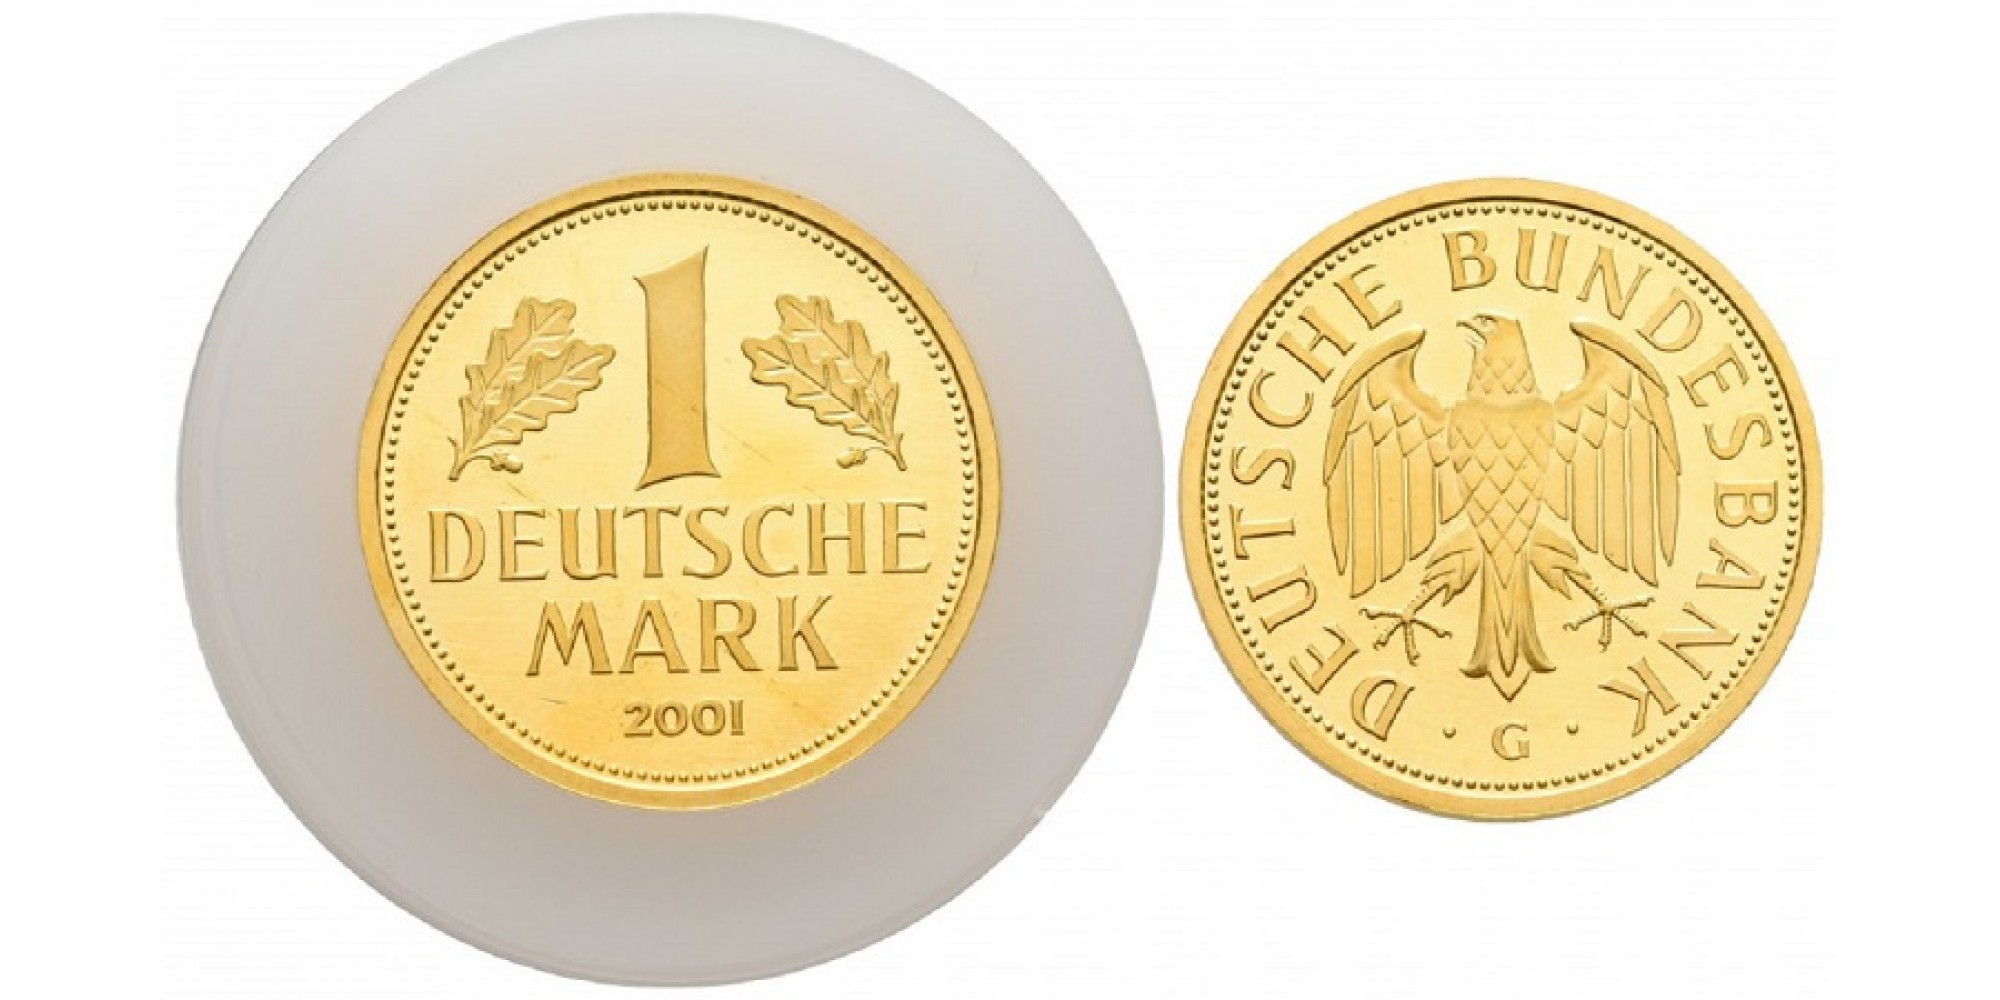 (ФРГ) Федеративная Республика Германия 1 марка 2001 год (G). Выход немецкой марки из обращения. Золото. BU - brilliant uncirculated.